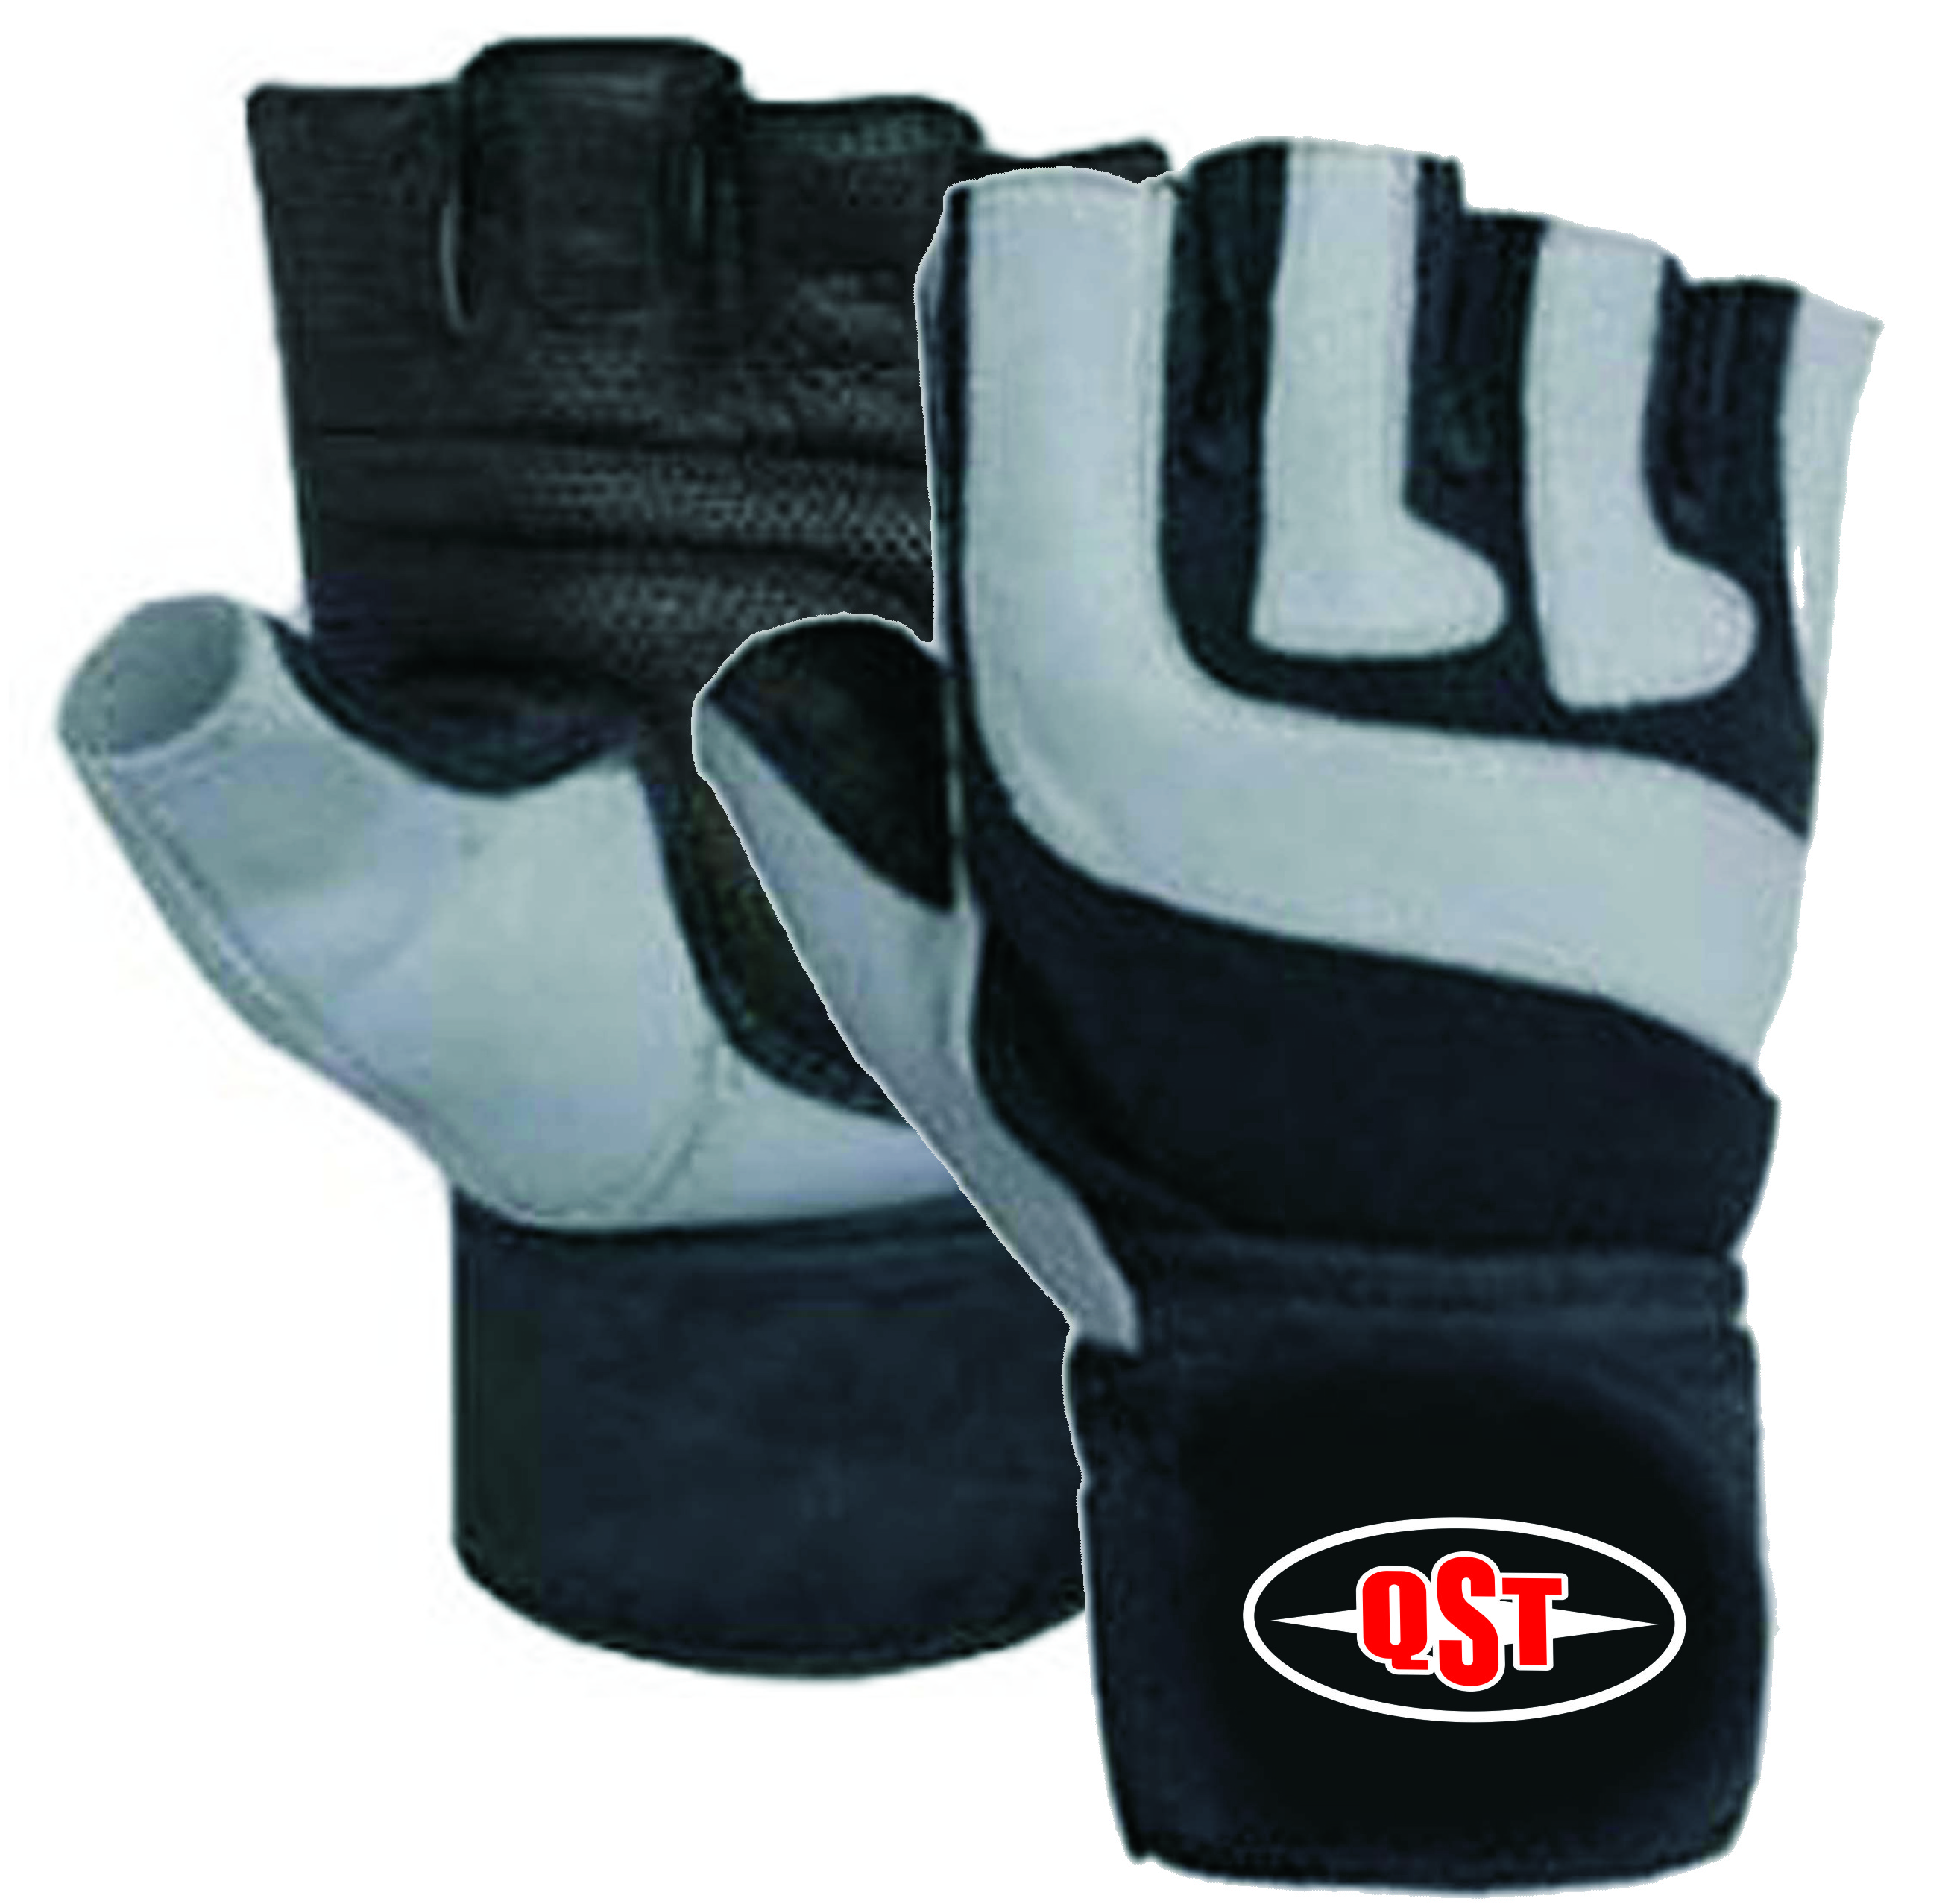 Weigh lifting Gloves Men - QST-3700